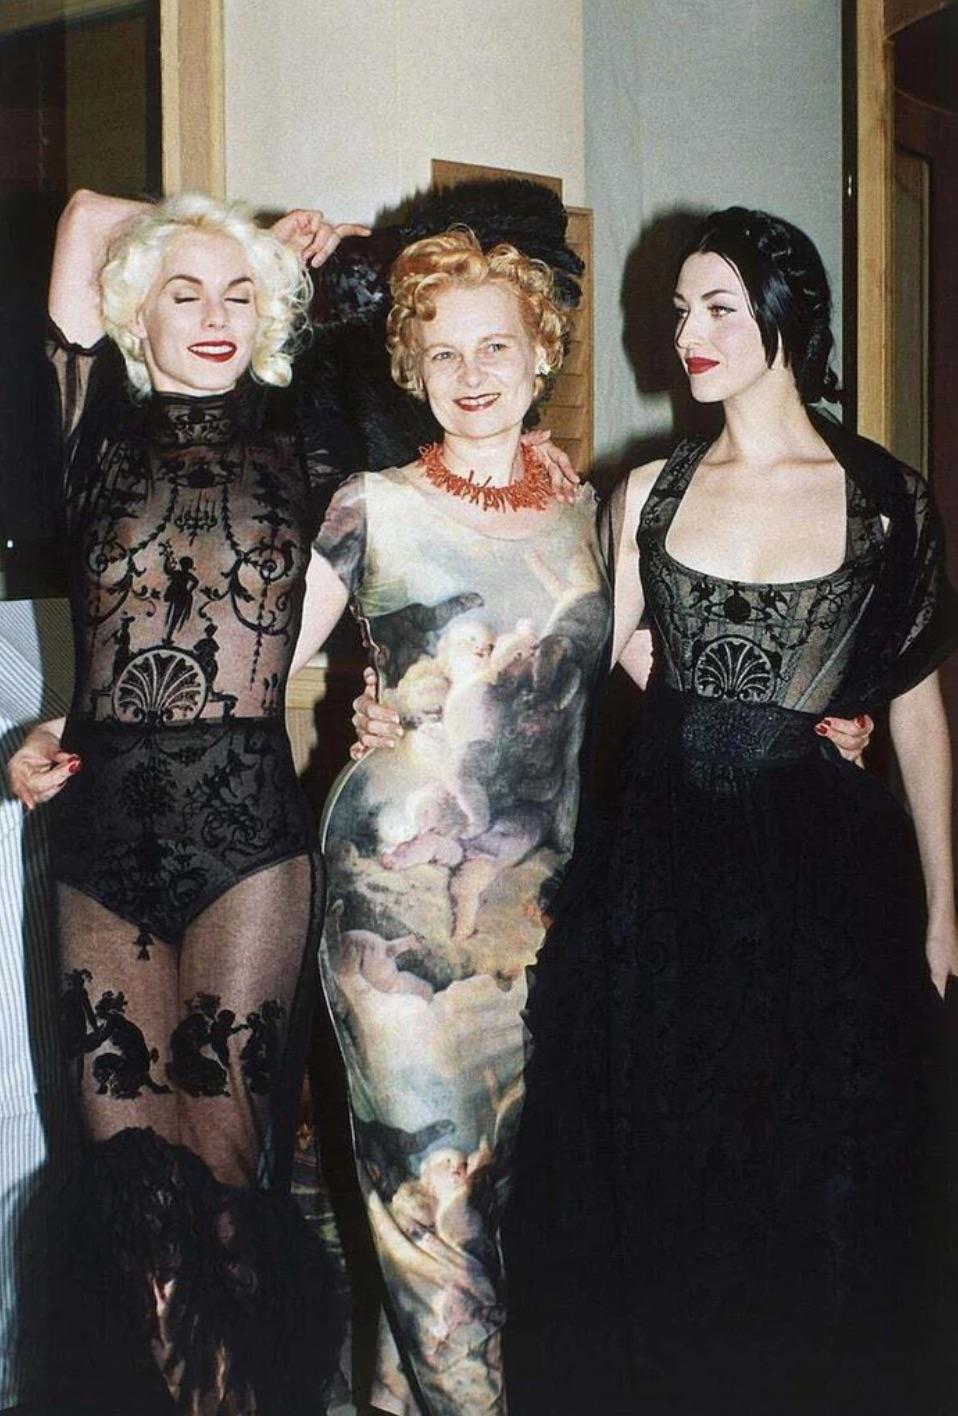 Der Vivienne Westwood x Sock Shop Boulle Bodysuit von 1992 ist ein Muss für jeden Sammler von Modeikonen. Wie bei Vivienne Westwoods Muse Sara Stockbridge gesehen. Mit dem kultigen Boulle-Print, der in Westwoods 